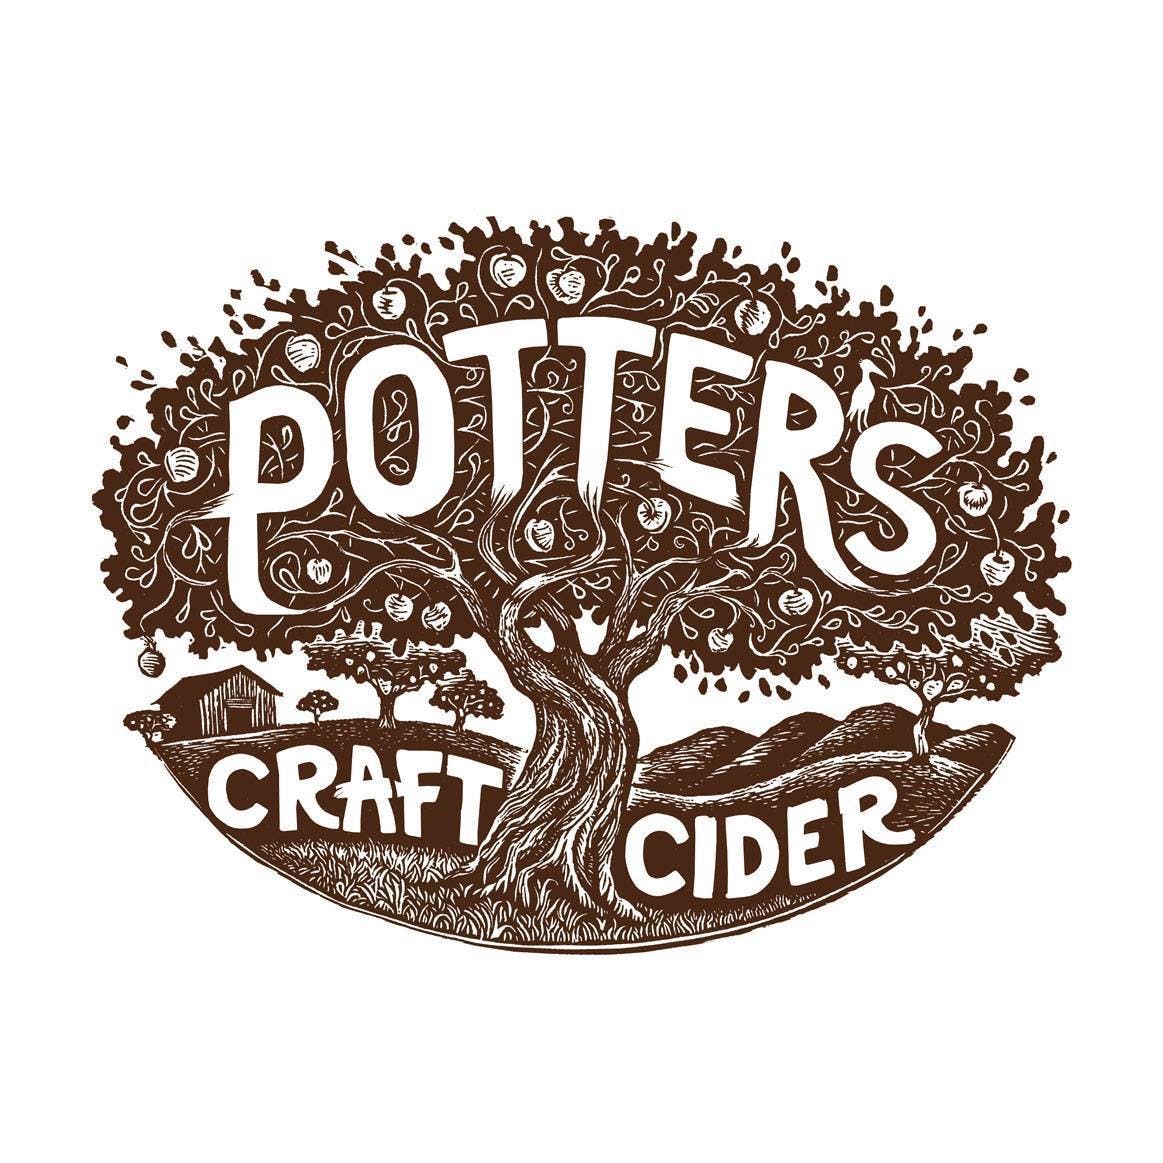 Potters Craft Cider 